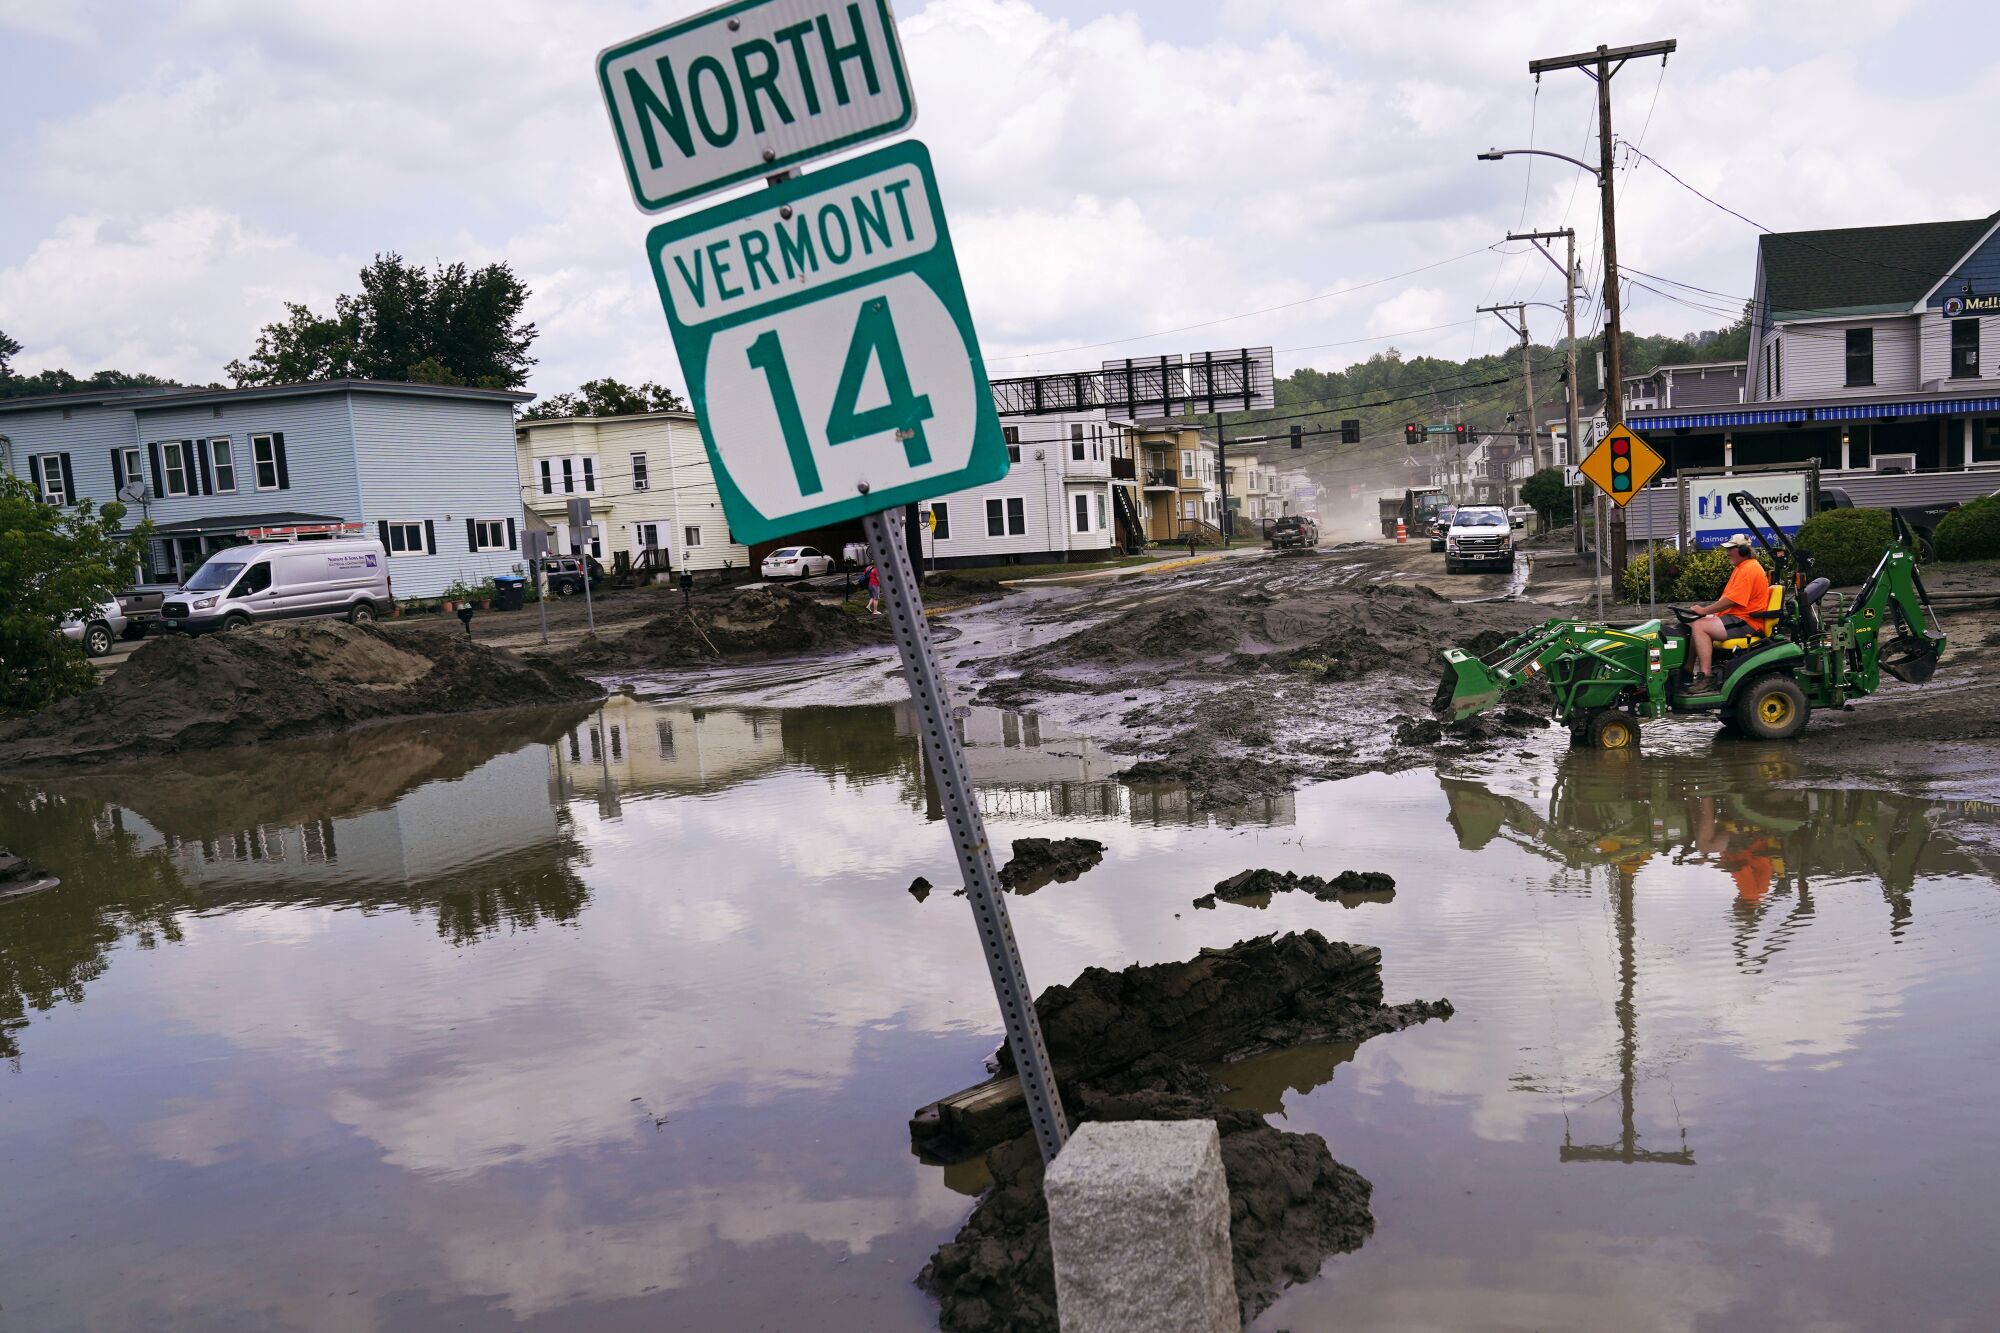 Ein kleiner Traktor fährt durch Schlamm neben Hochwasser, das teilweise ein Schild mit der Aufschrift überschwemmt "Nord-Vermont 14."